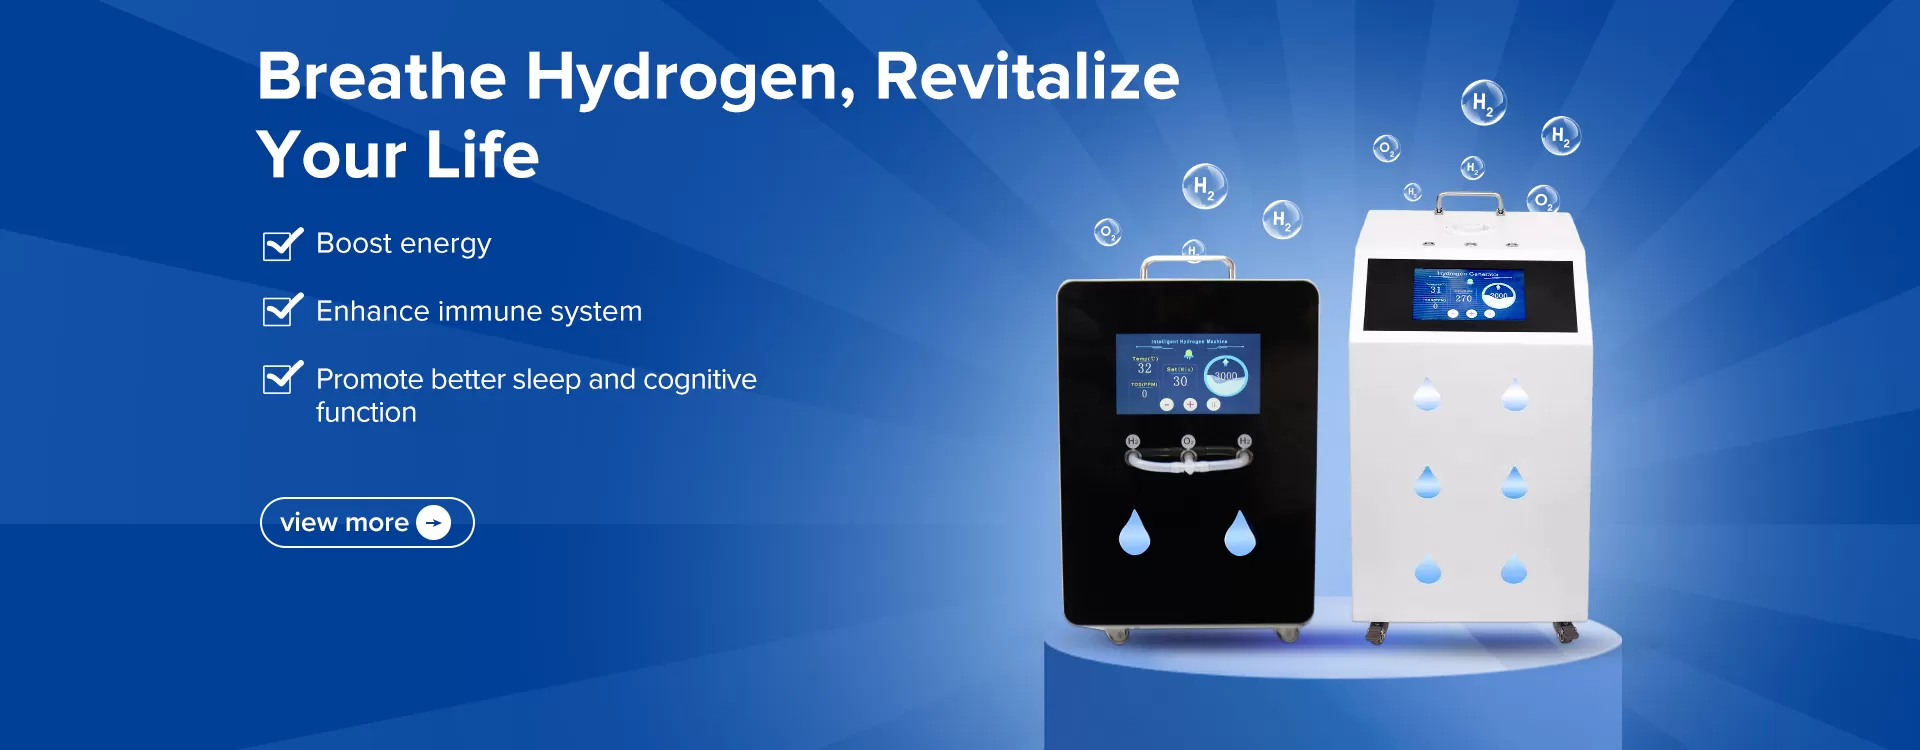 hydrogen inhaler